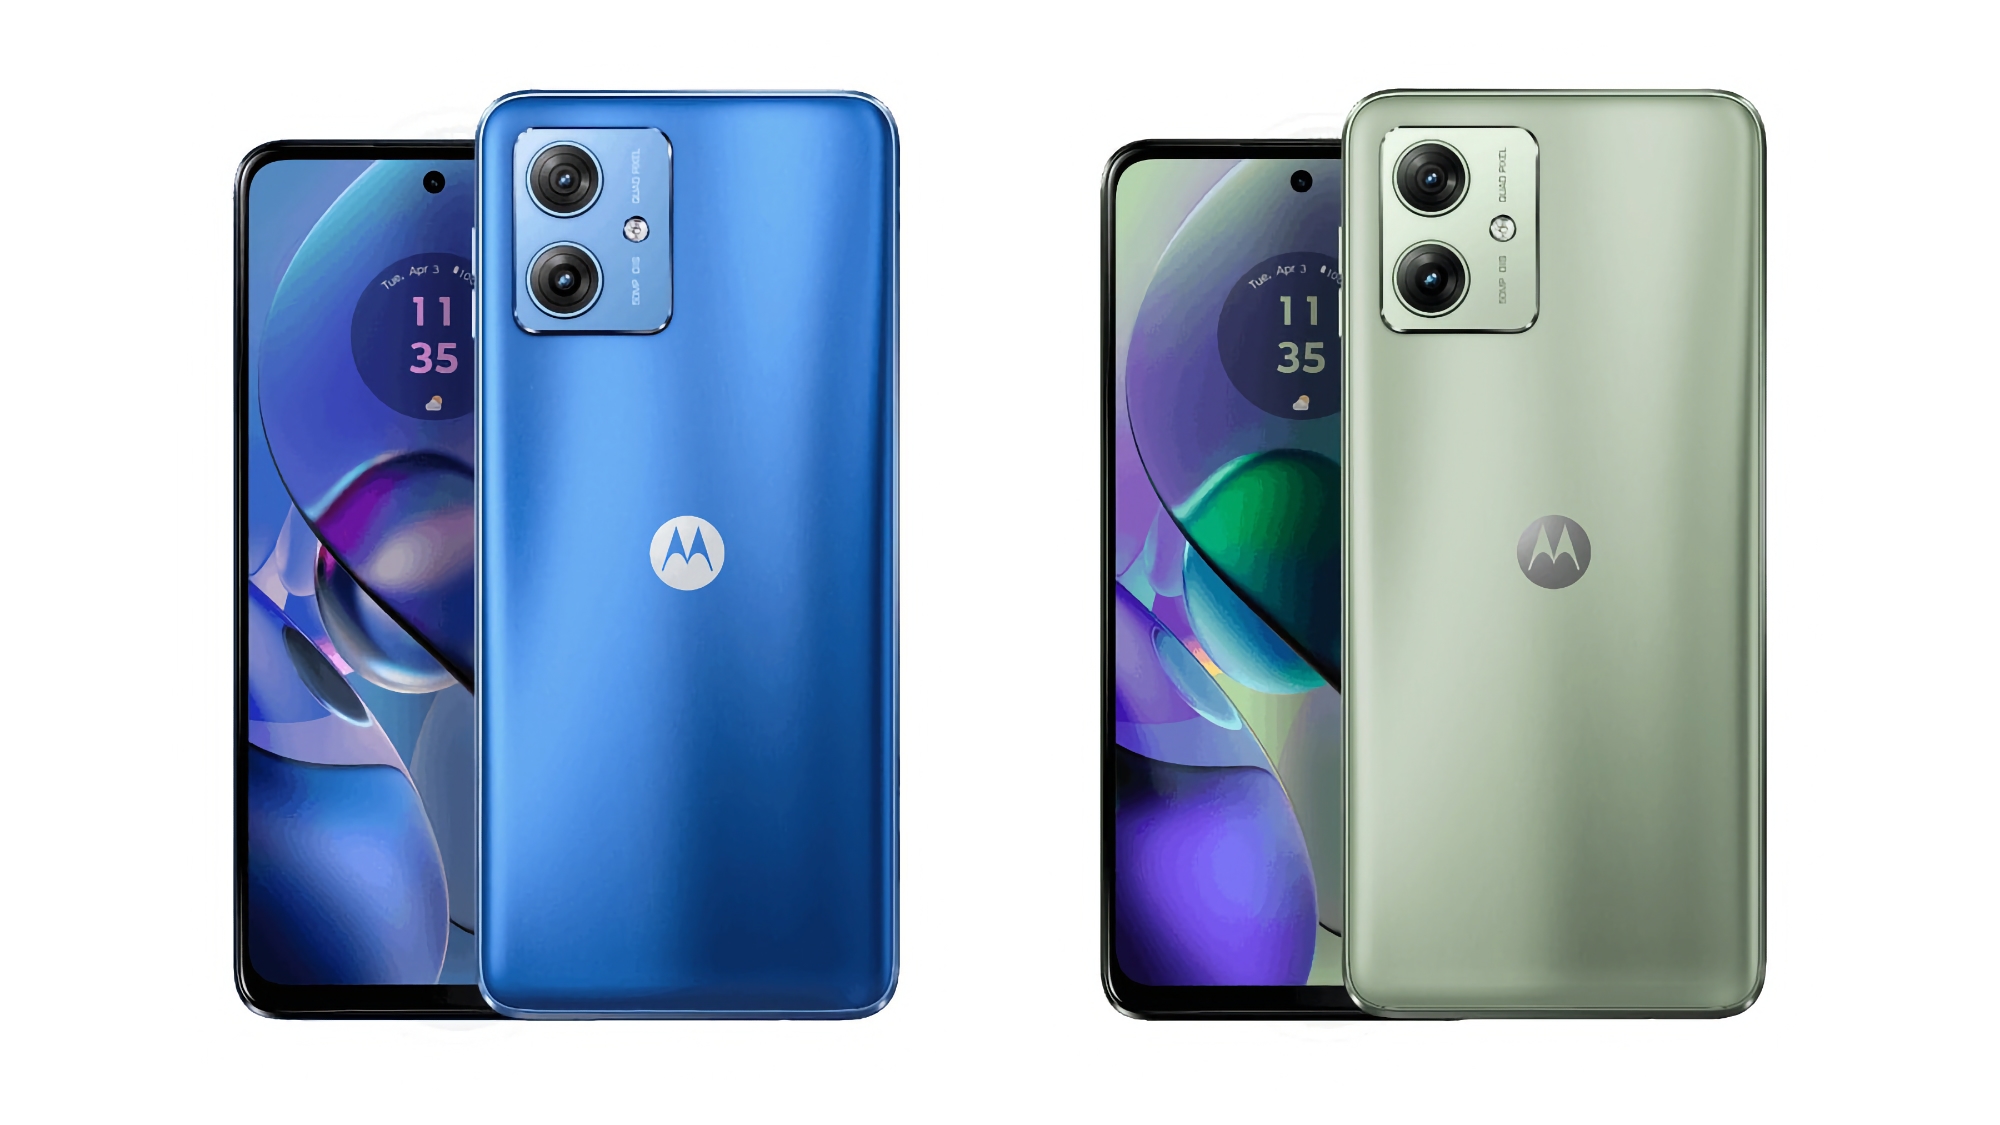 Nu er det officielt: Motorola afslører Moto G54 5G med et 50 MP kamera og et batteri på 5.000 mAh ved et event den 5. september.